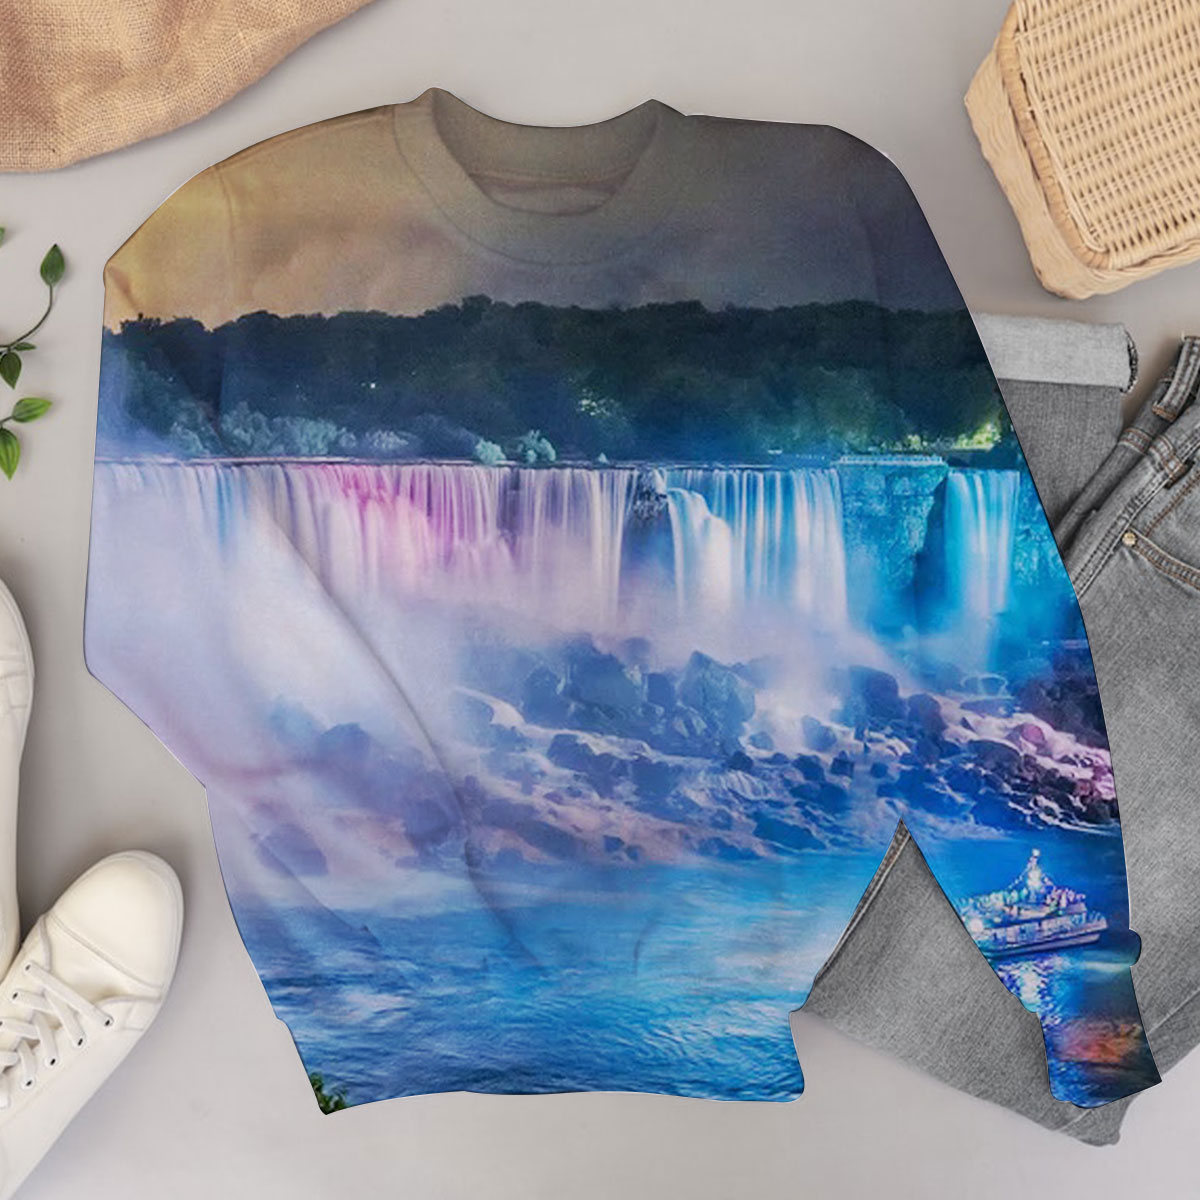 Niagara Falls by Night Sweater